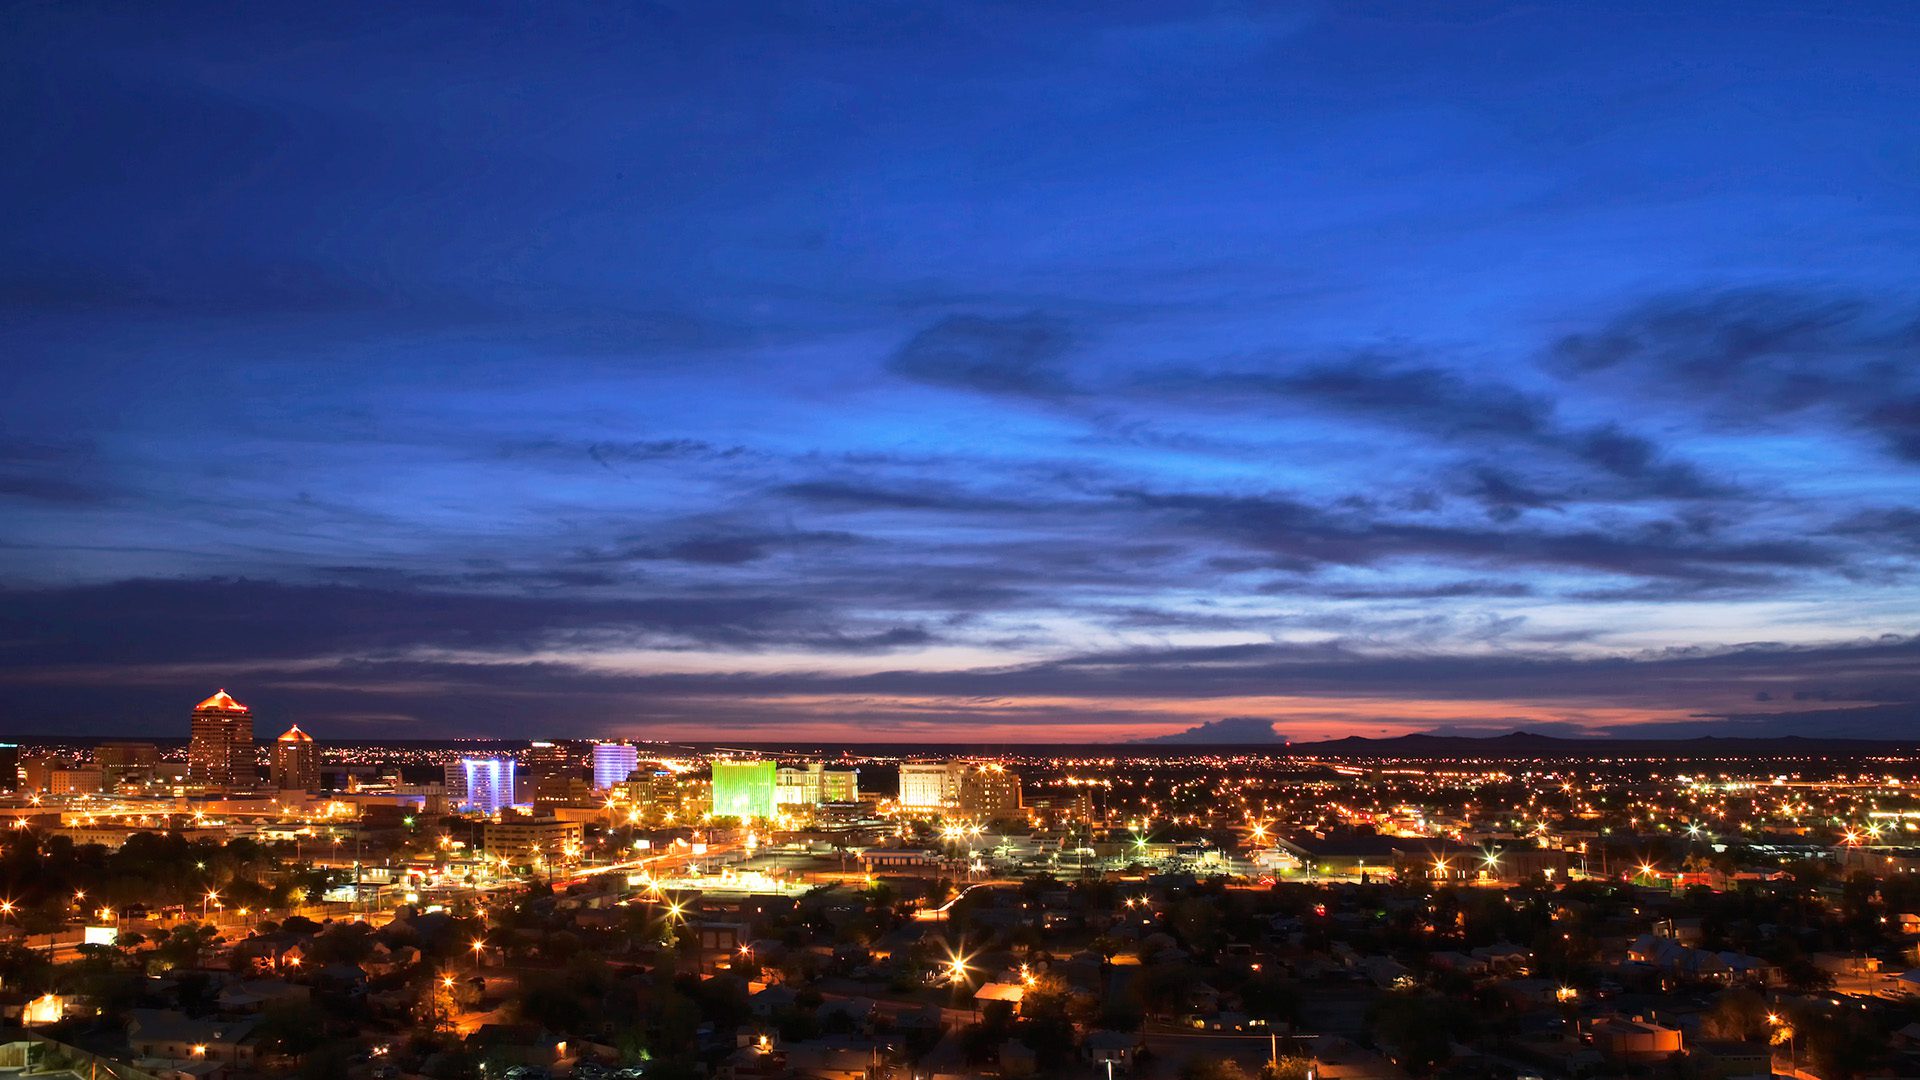 Albuquerque skyline at night